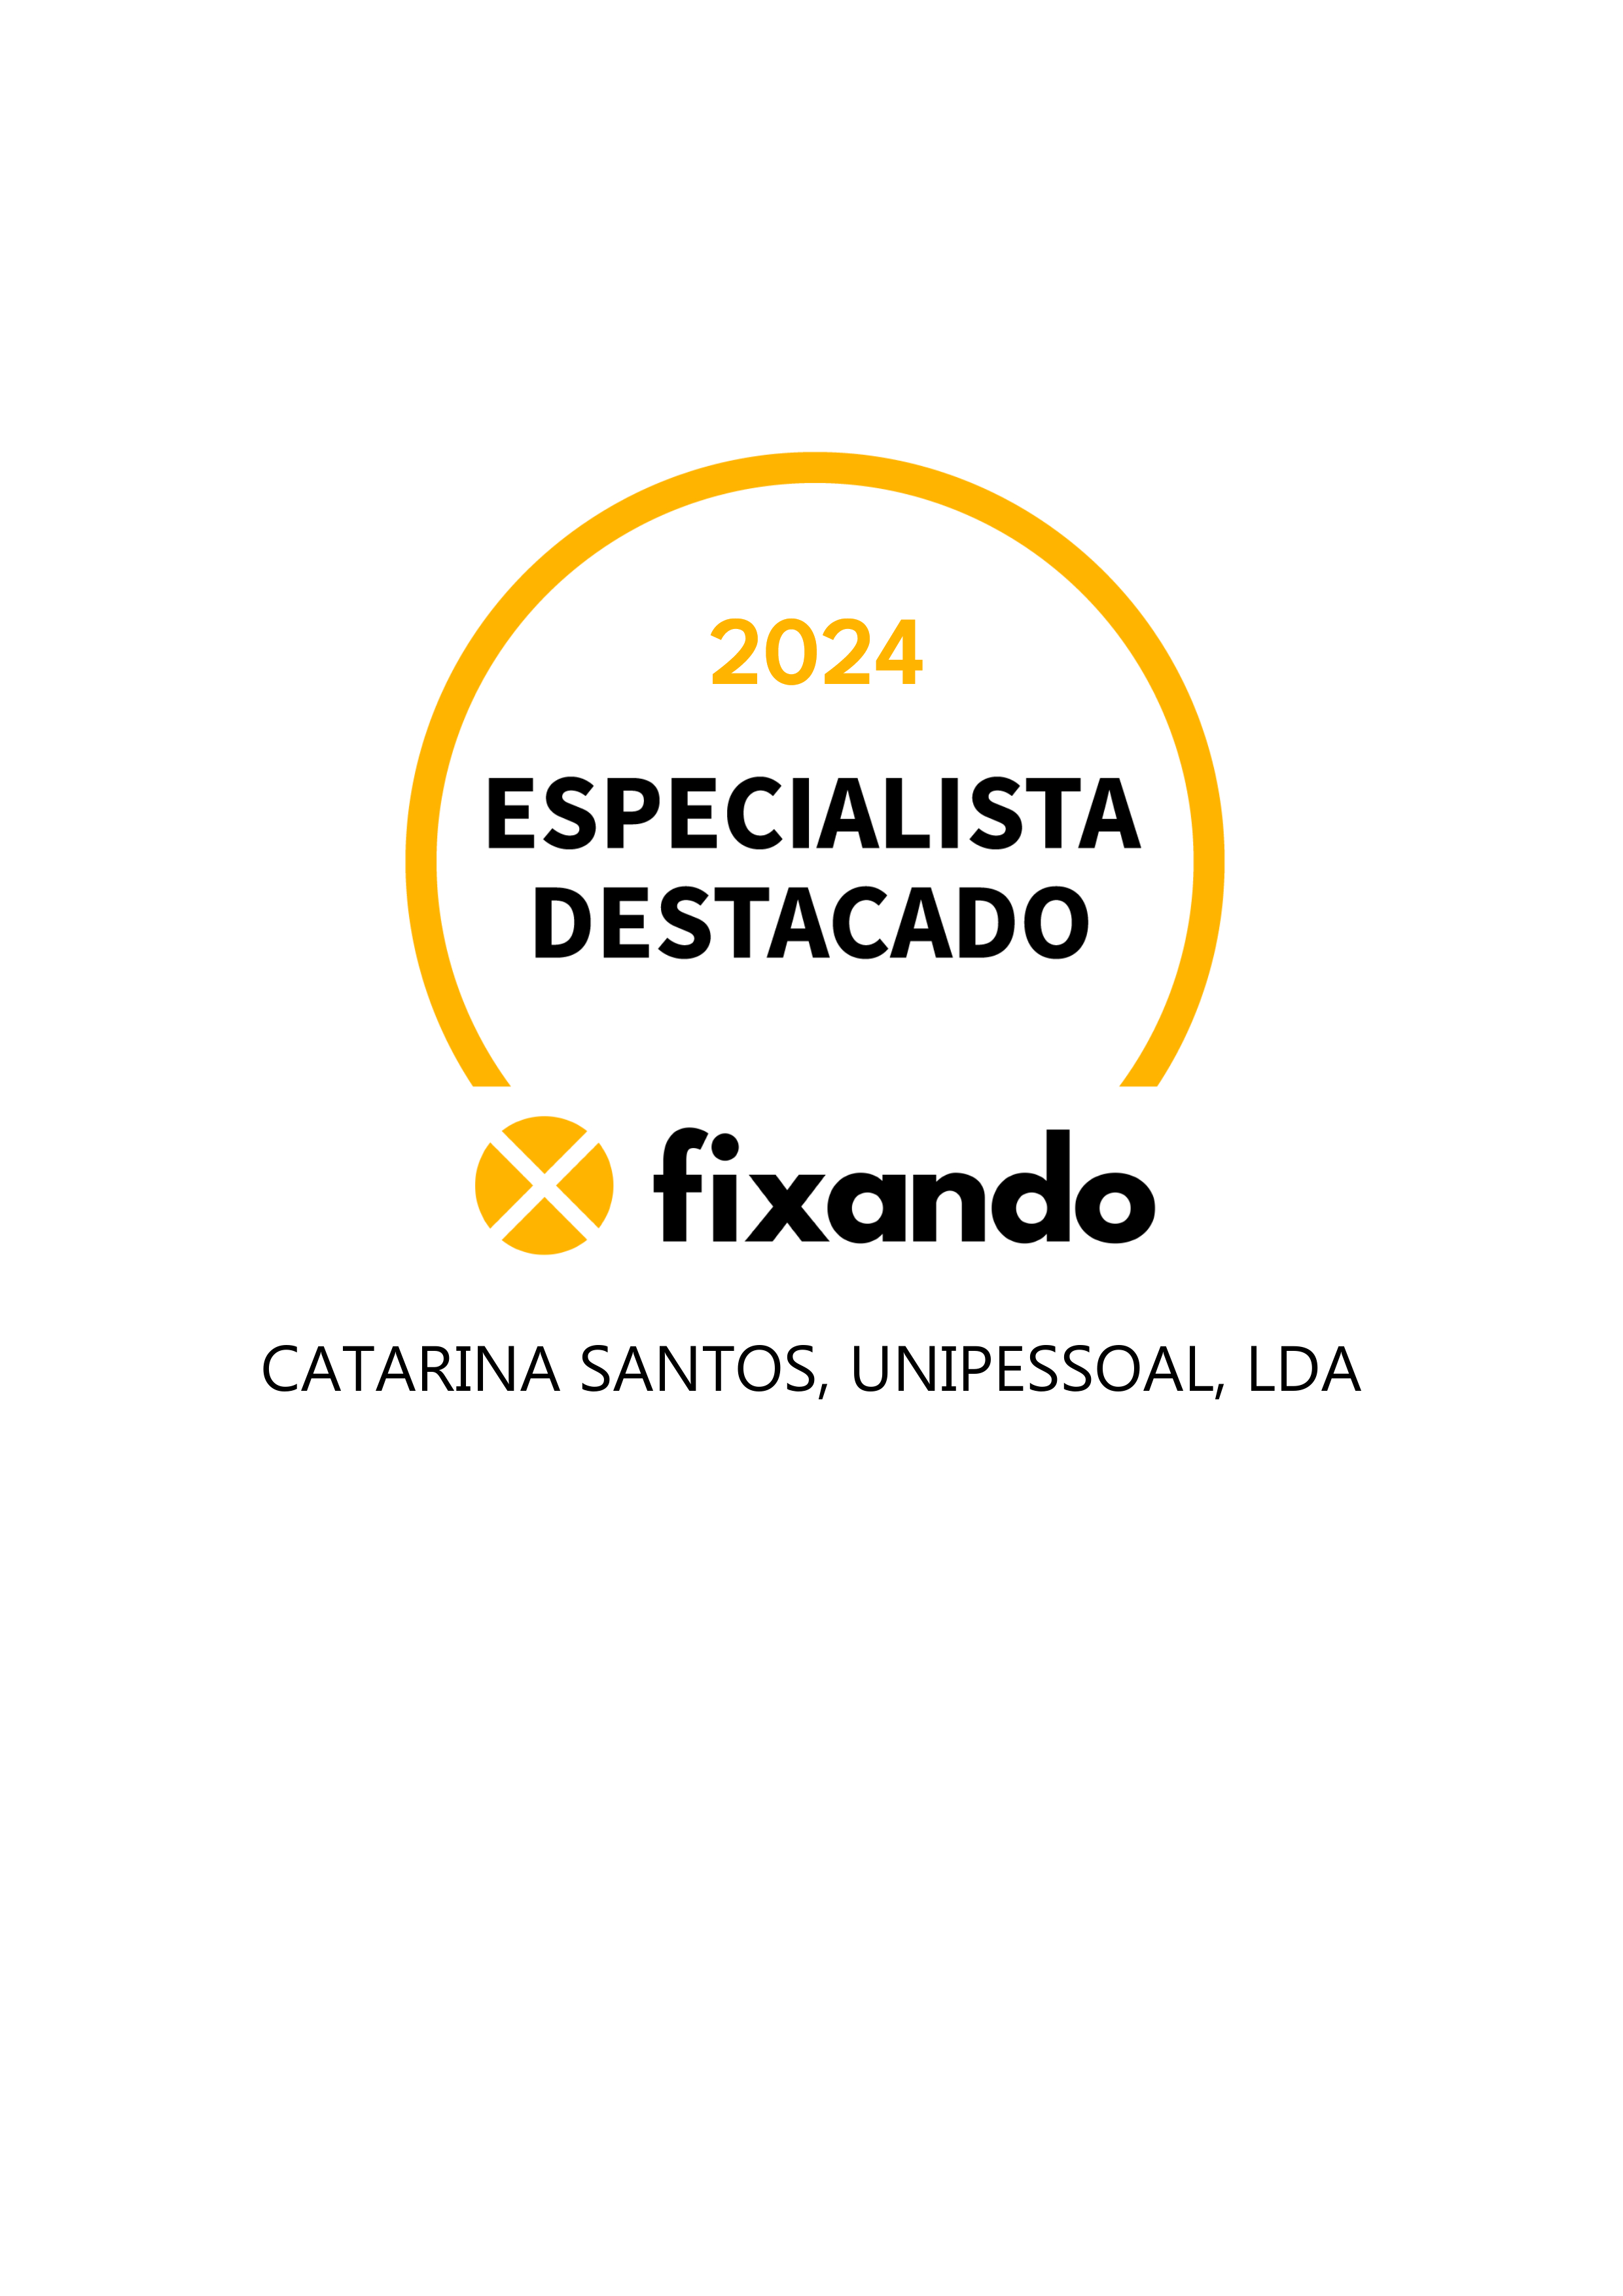 Catarina Santos, Unipessoal, Lda - Seixal - Remodelação de Cozinhas